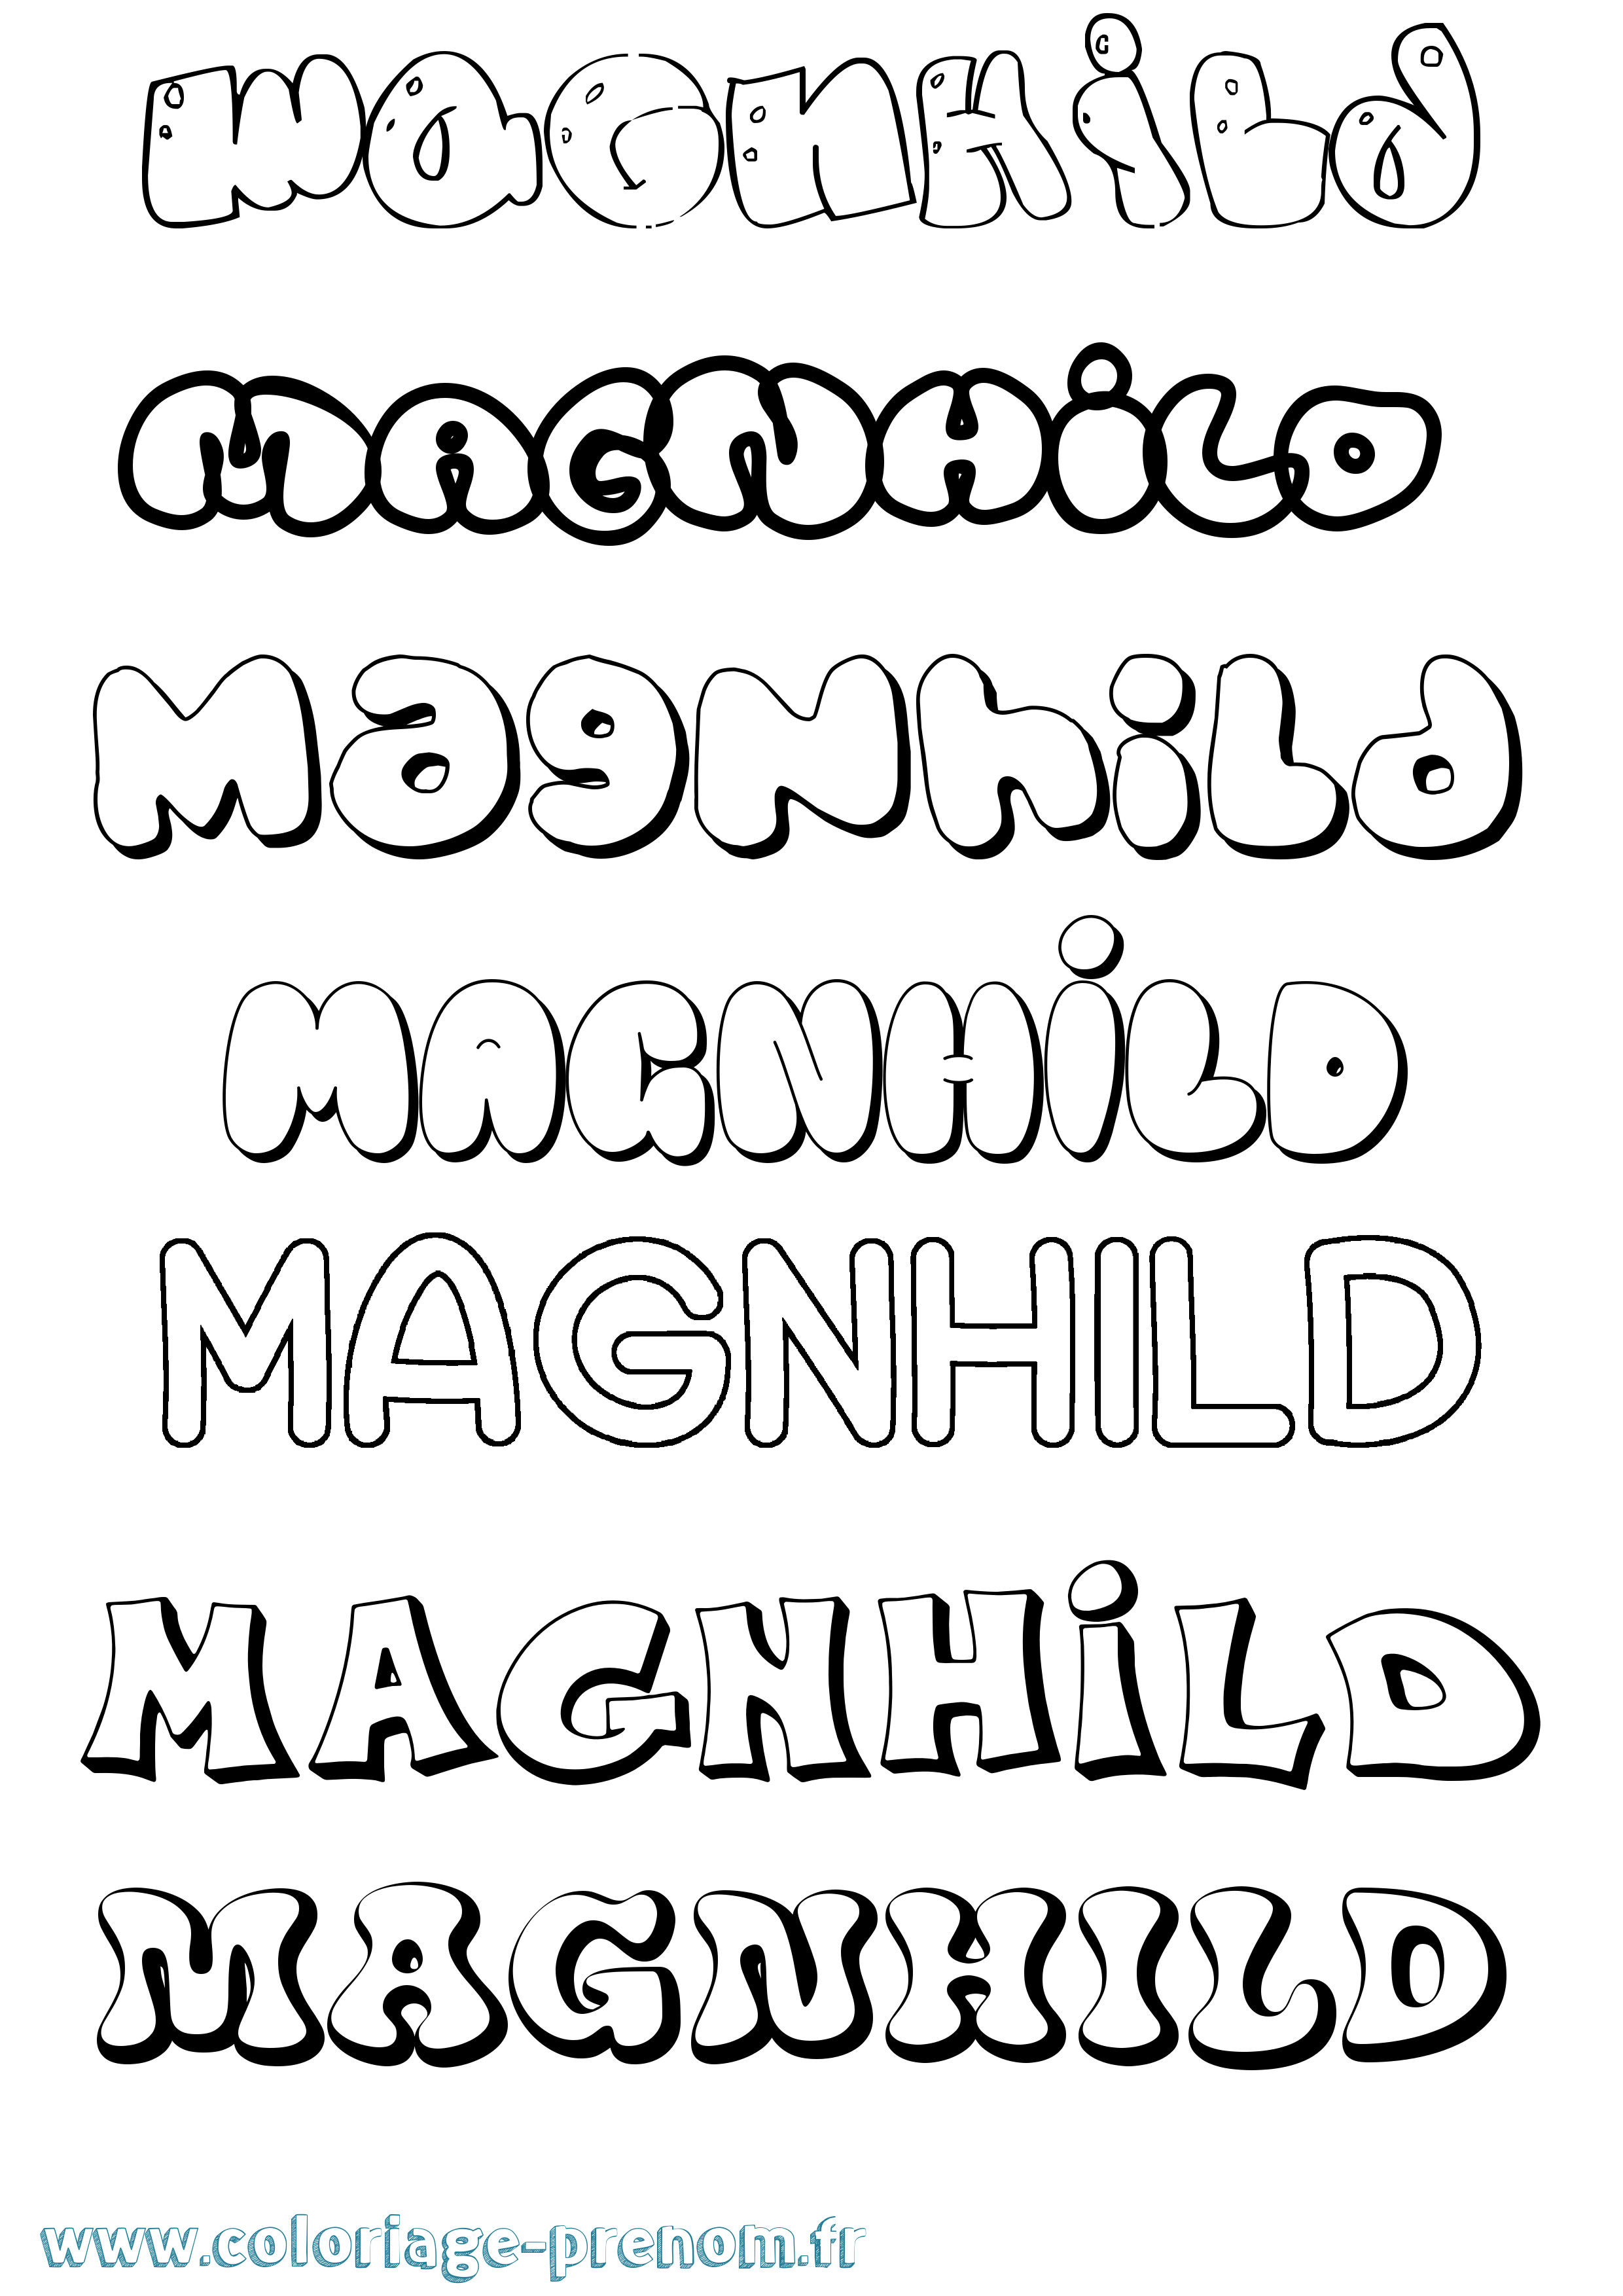 Coloriage prénom Magnhild Bubble